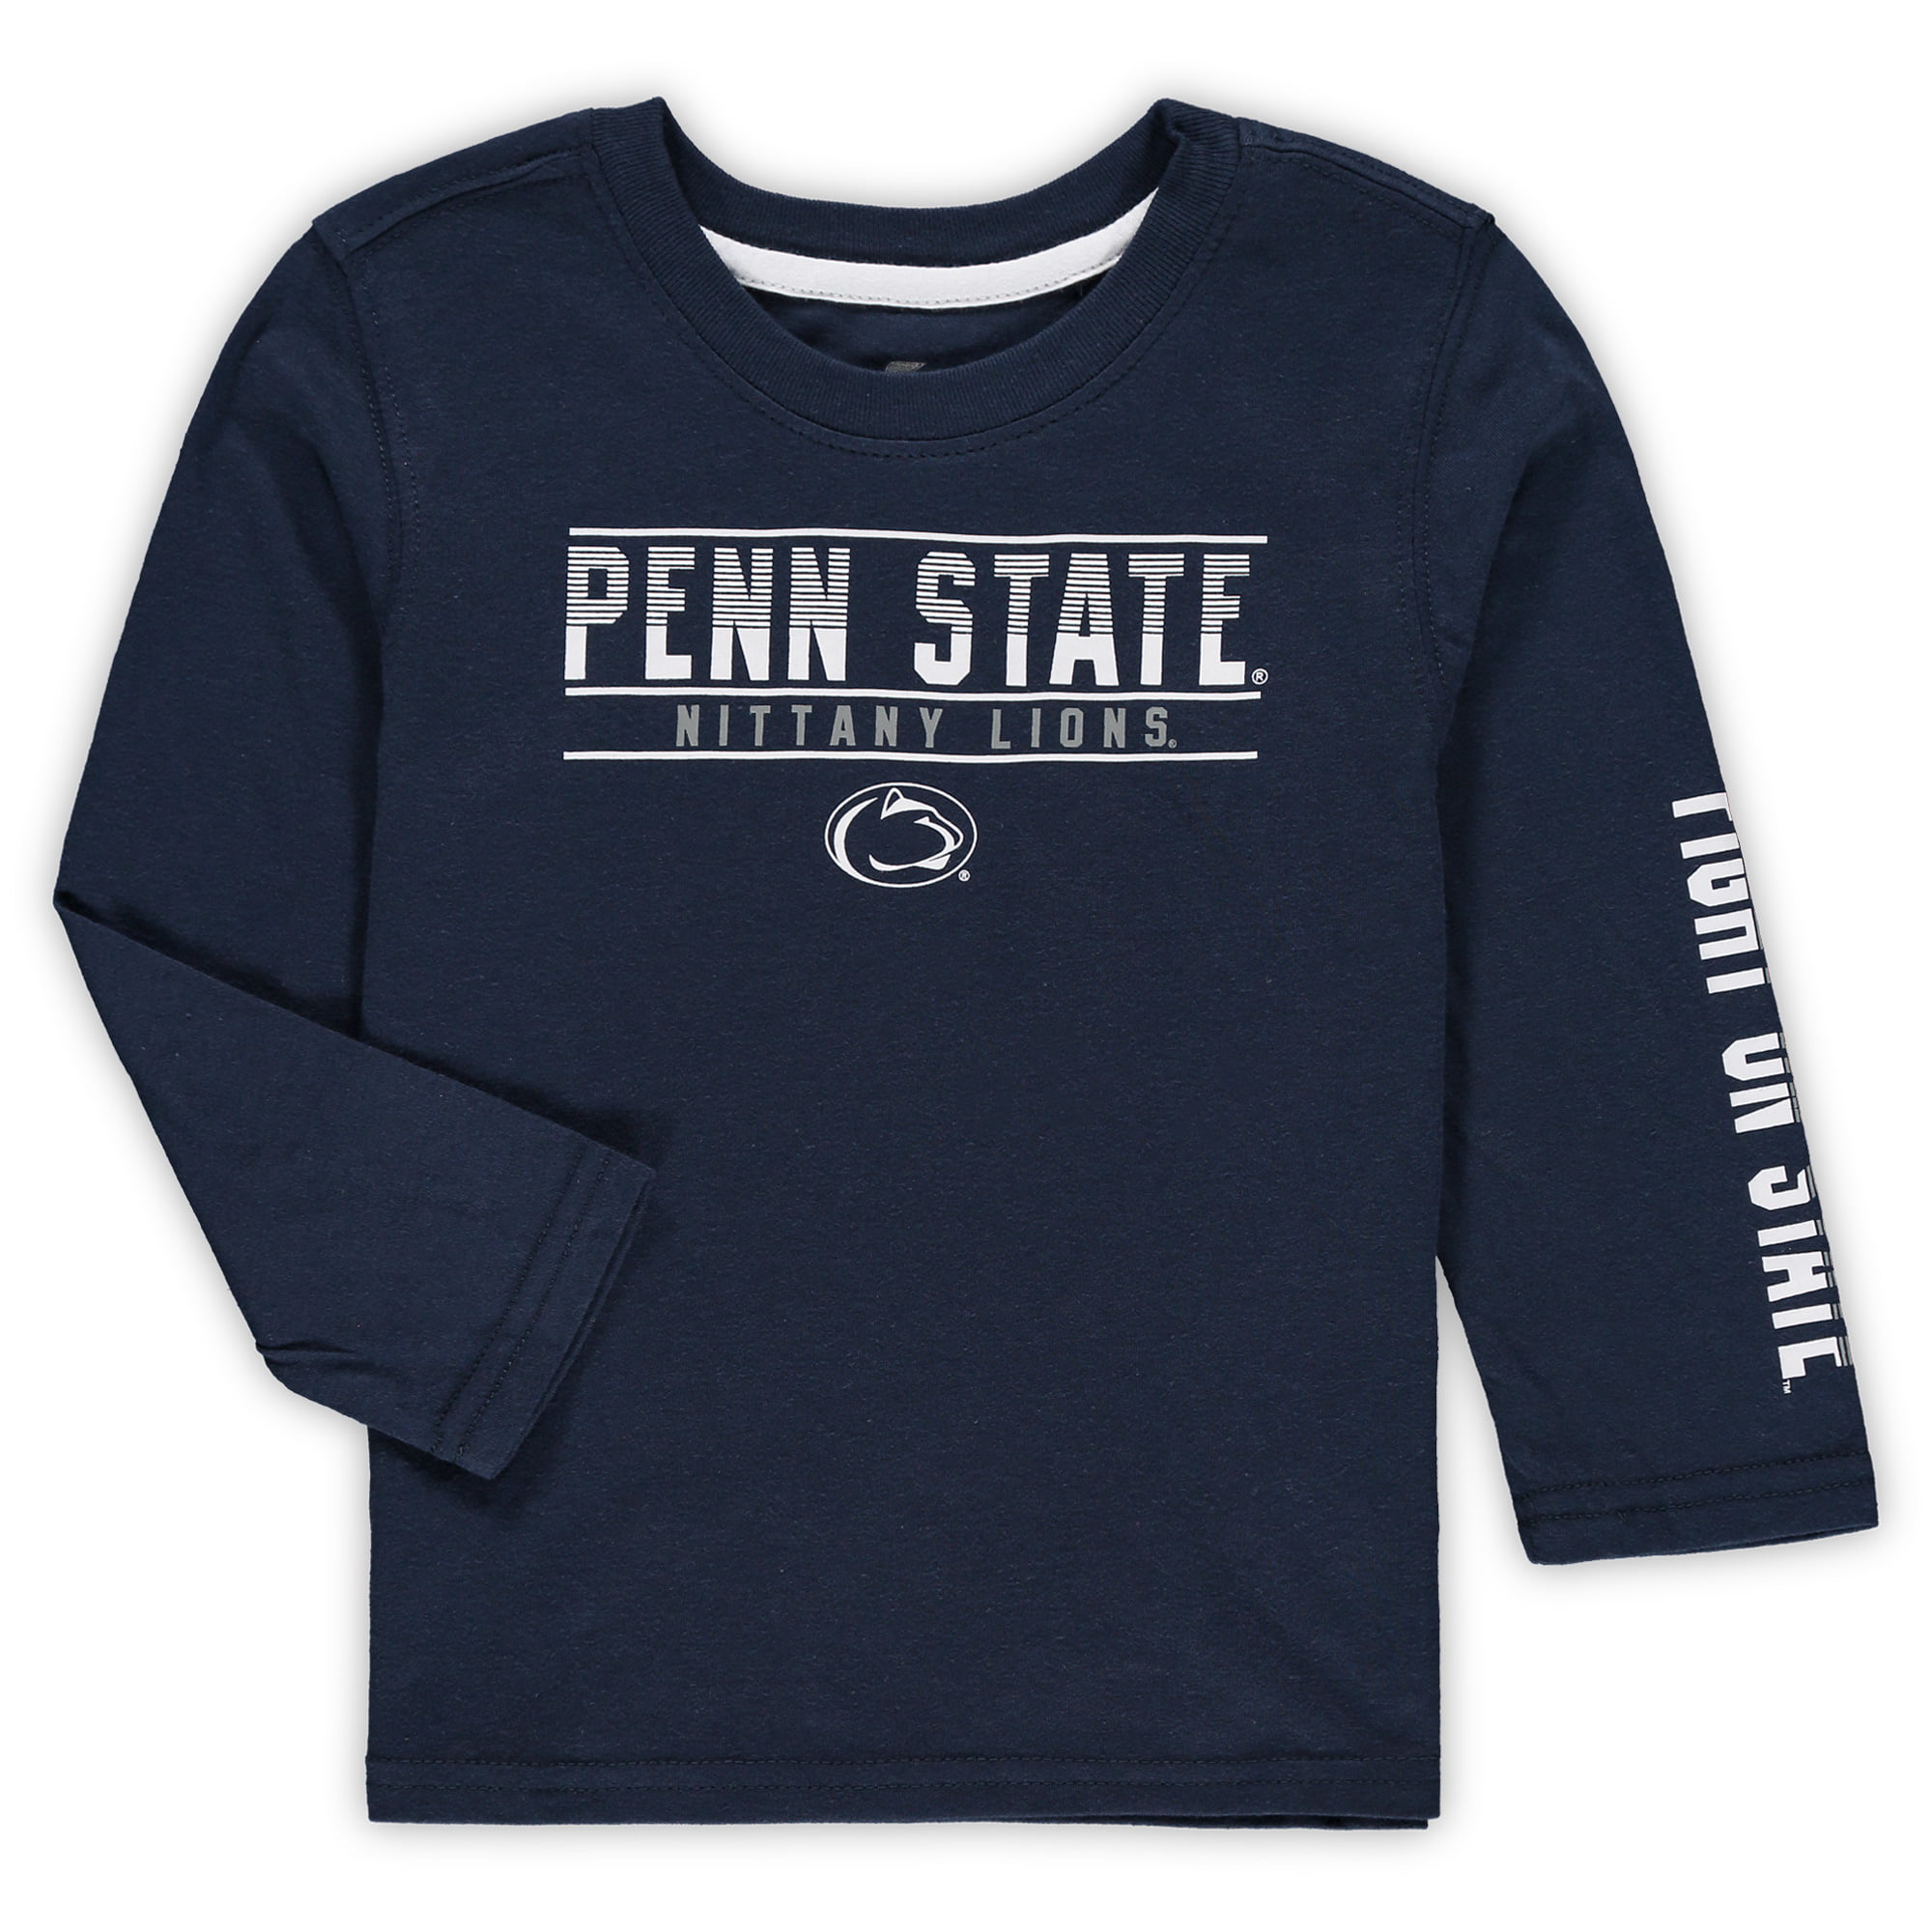 not penn state shirt